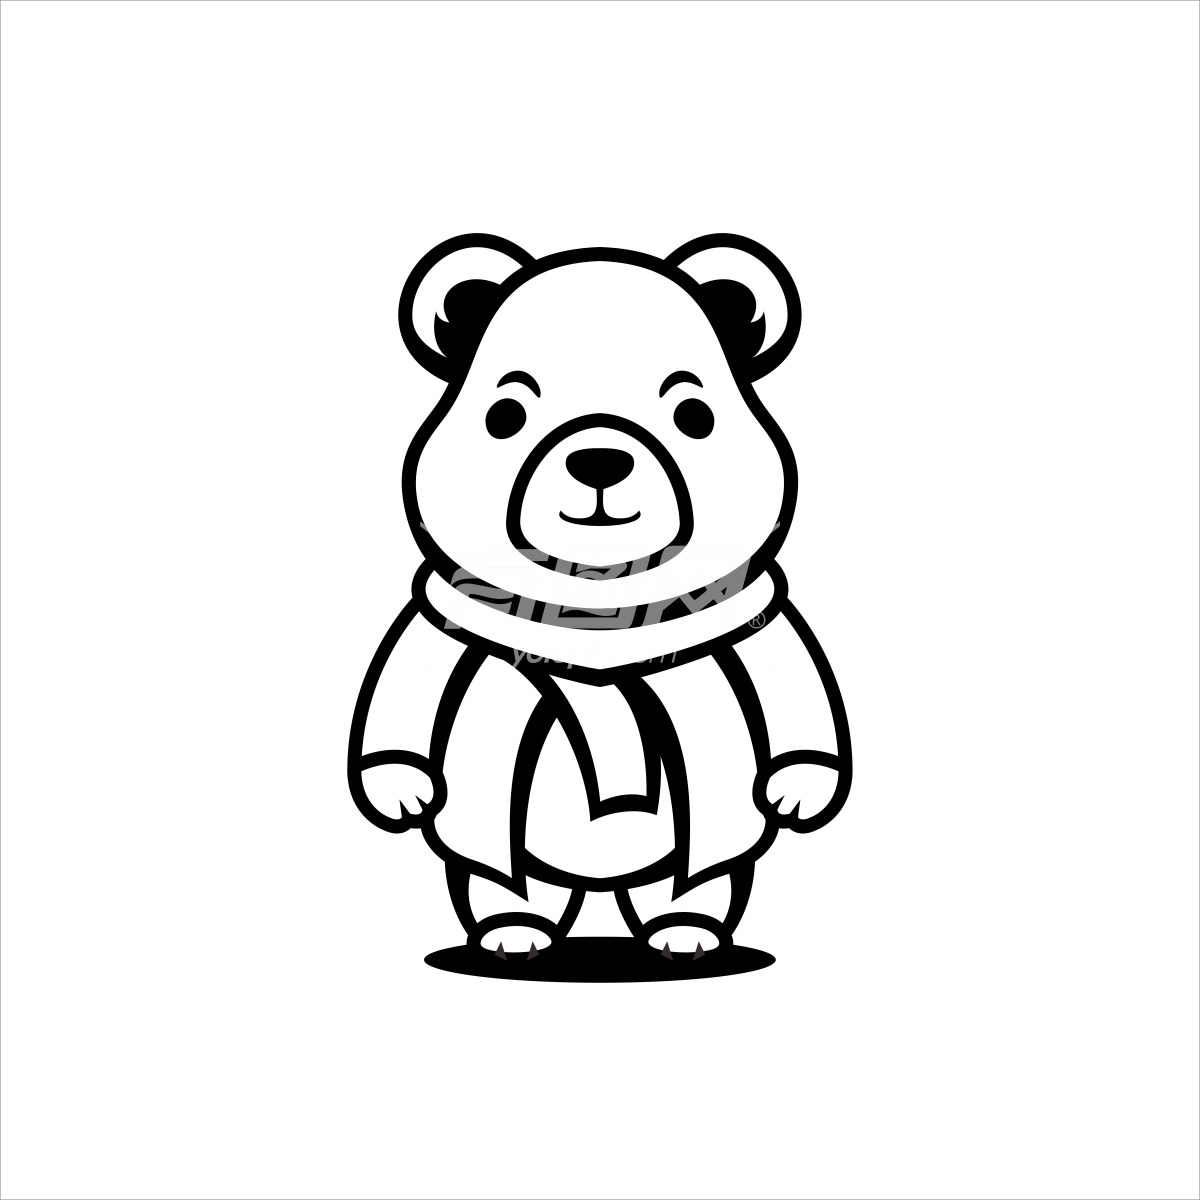 熊卡通形象设计